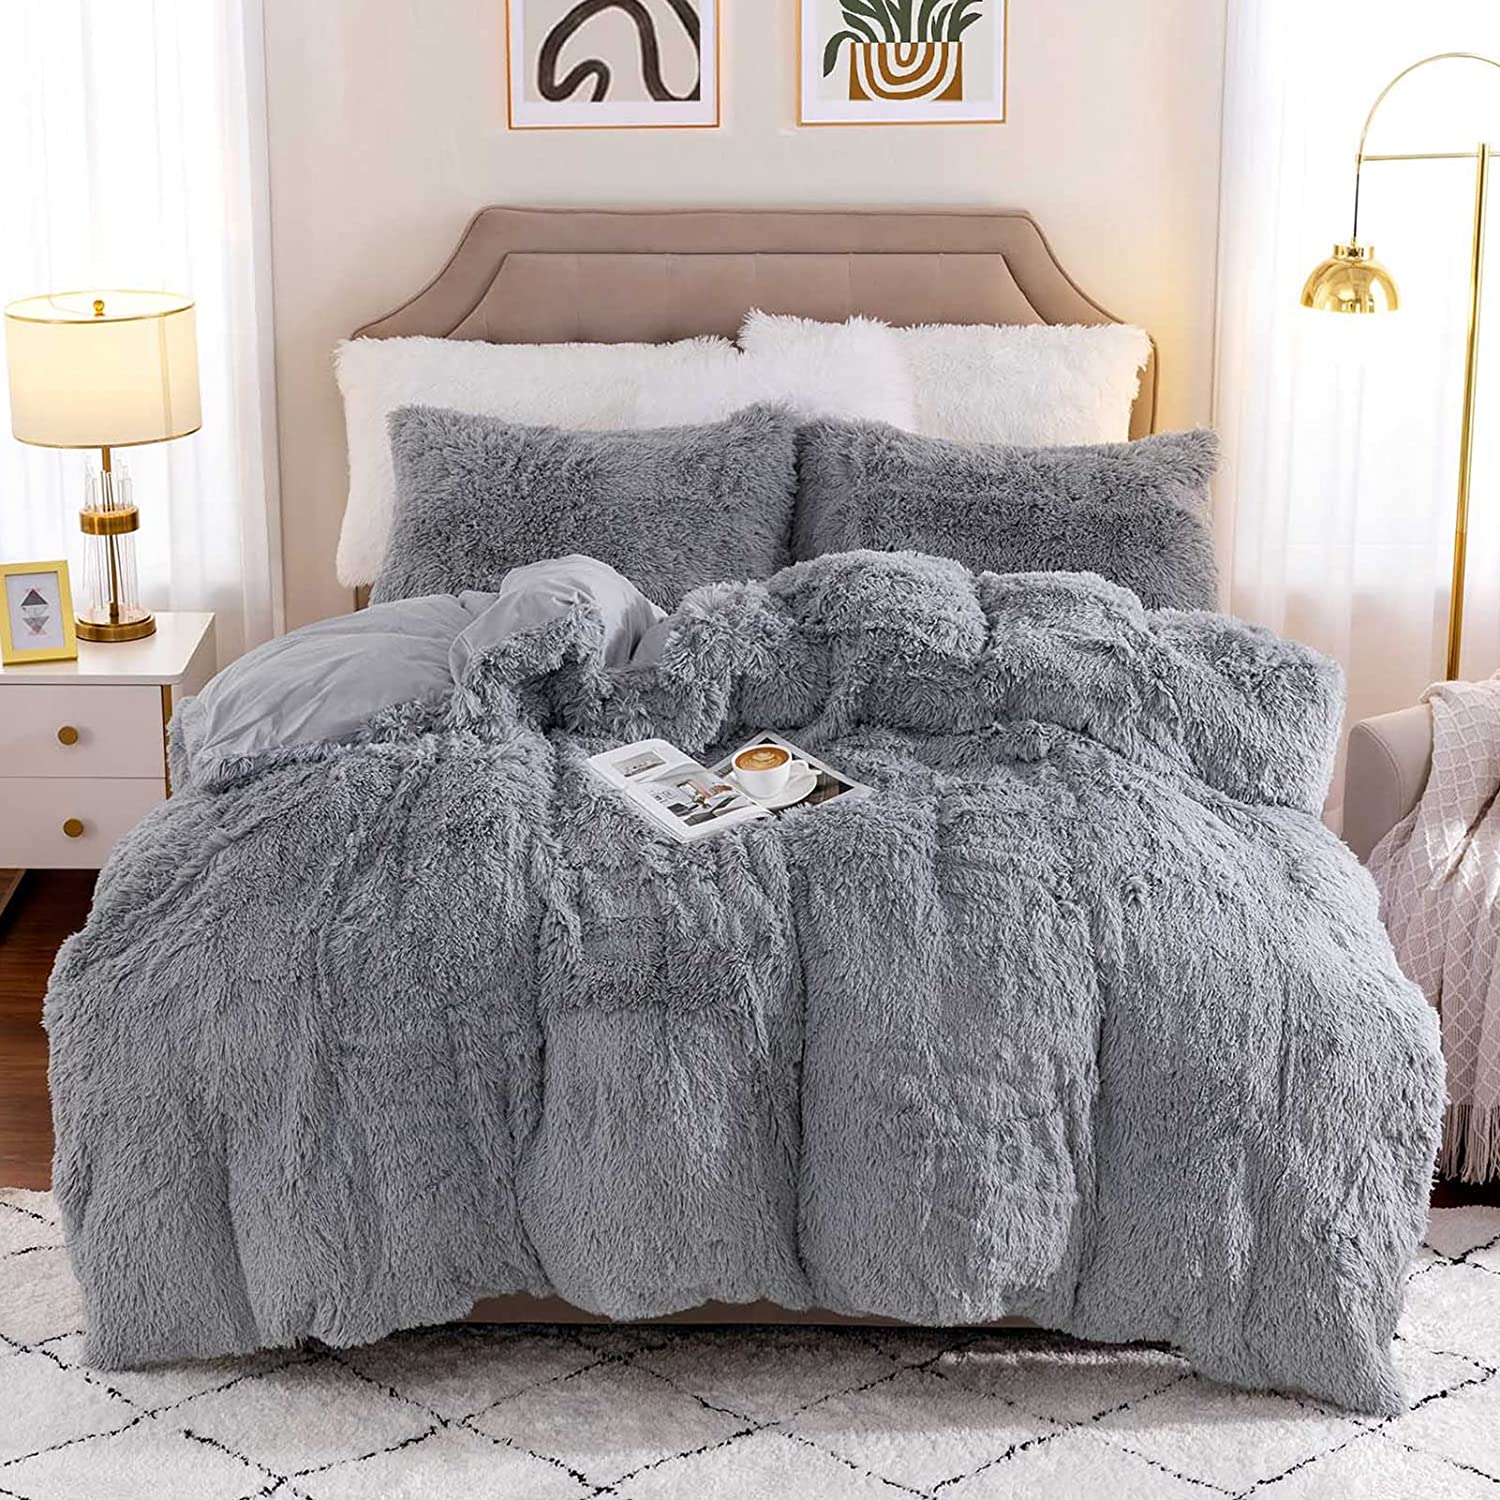 Price:$43.99  Plush Shaggy Duvet Cover Set Ultra Soft Velvet Bedding Sets 3 Pieces (1 Faux Fur Duvet Cover + 2 Faux Fur Pillow case), Zipper Closure (Queen, Gray) : Home & Kitchen